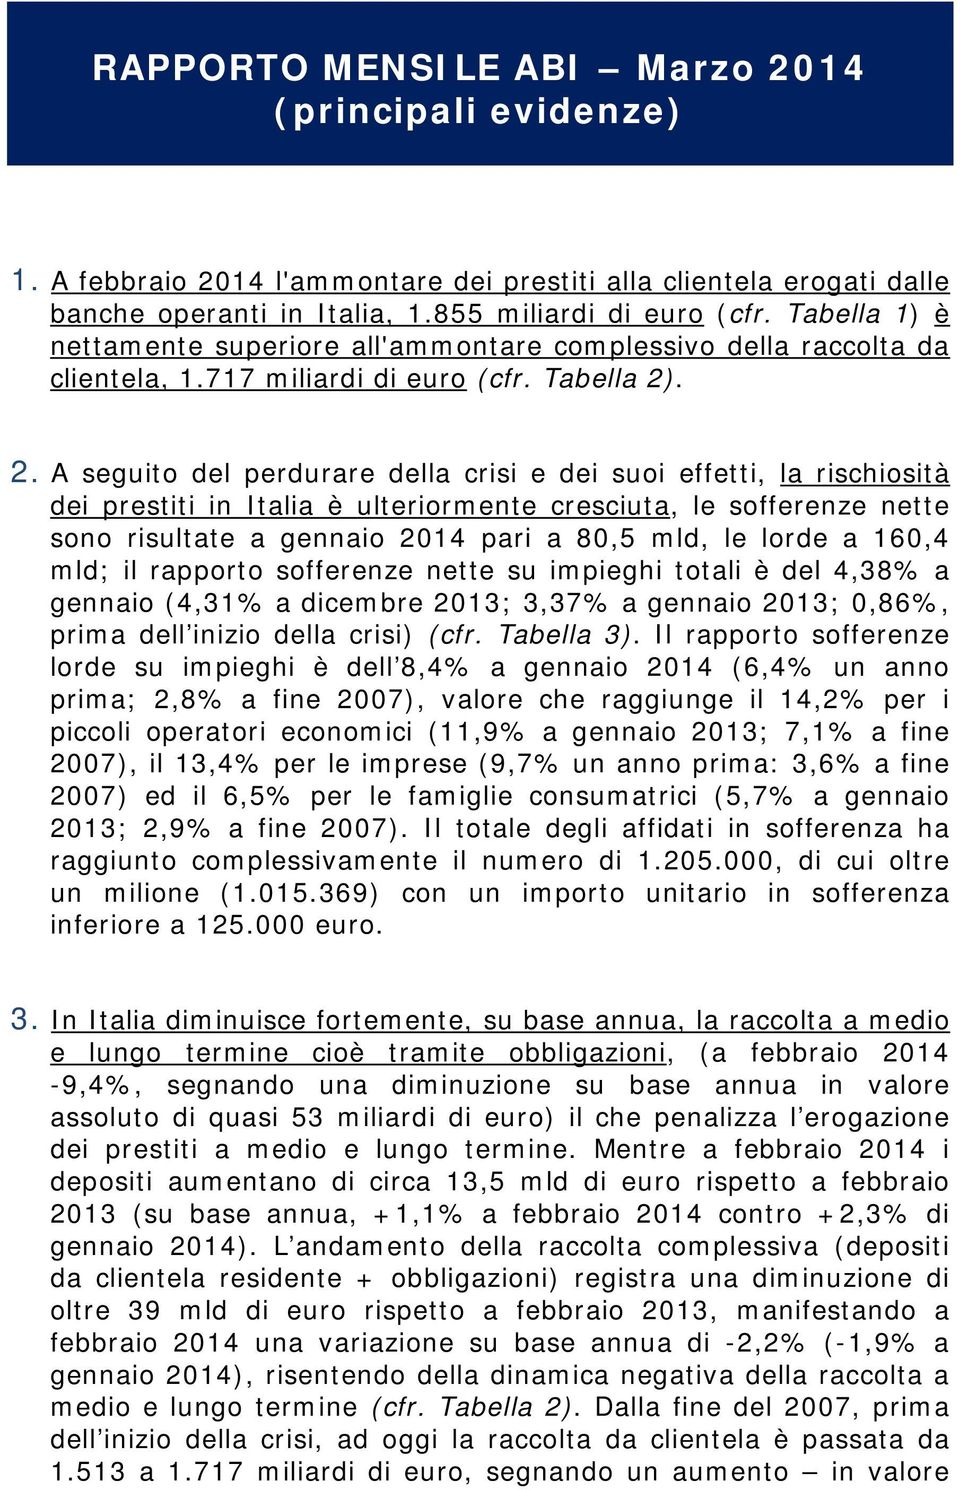 . 2. A seguito del perdurare della crisi e dei suoi effetti, la rischiosità dei prestiti in Italia è ulteriormente cresciuta, le sofferenze nette sono risultate a gennaio 2014 pari a 80,5 mld, le